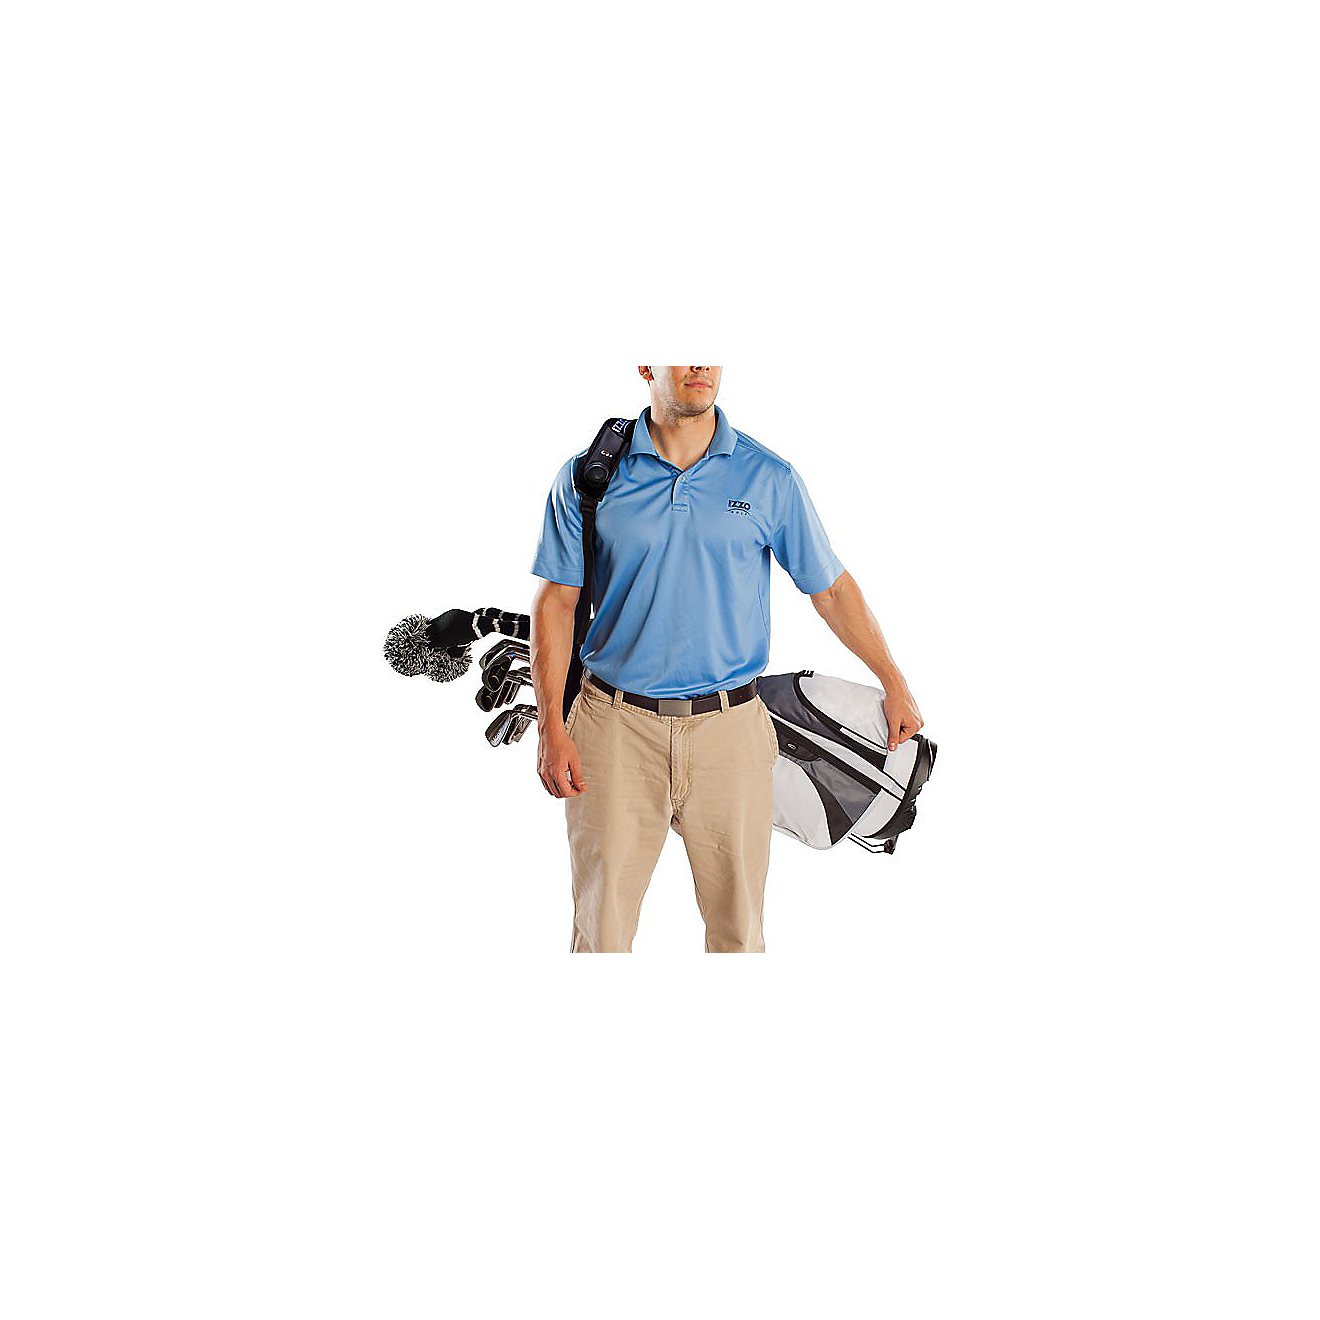 IZZO Golf Sidewinder Golf Bag Speaker Strap